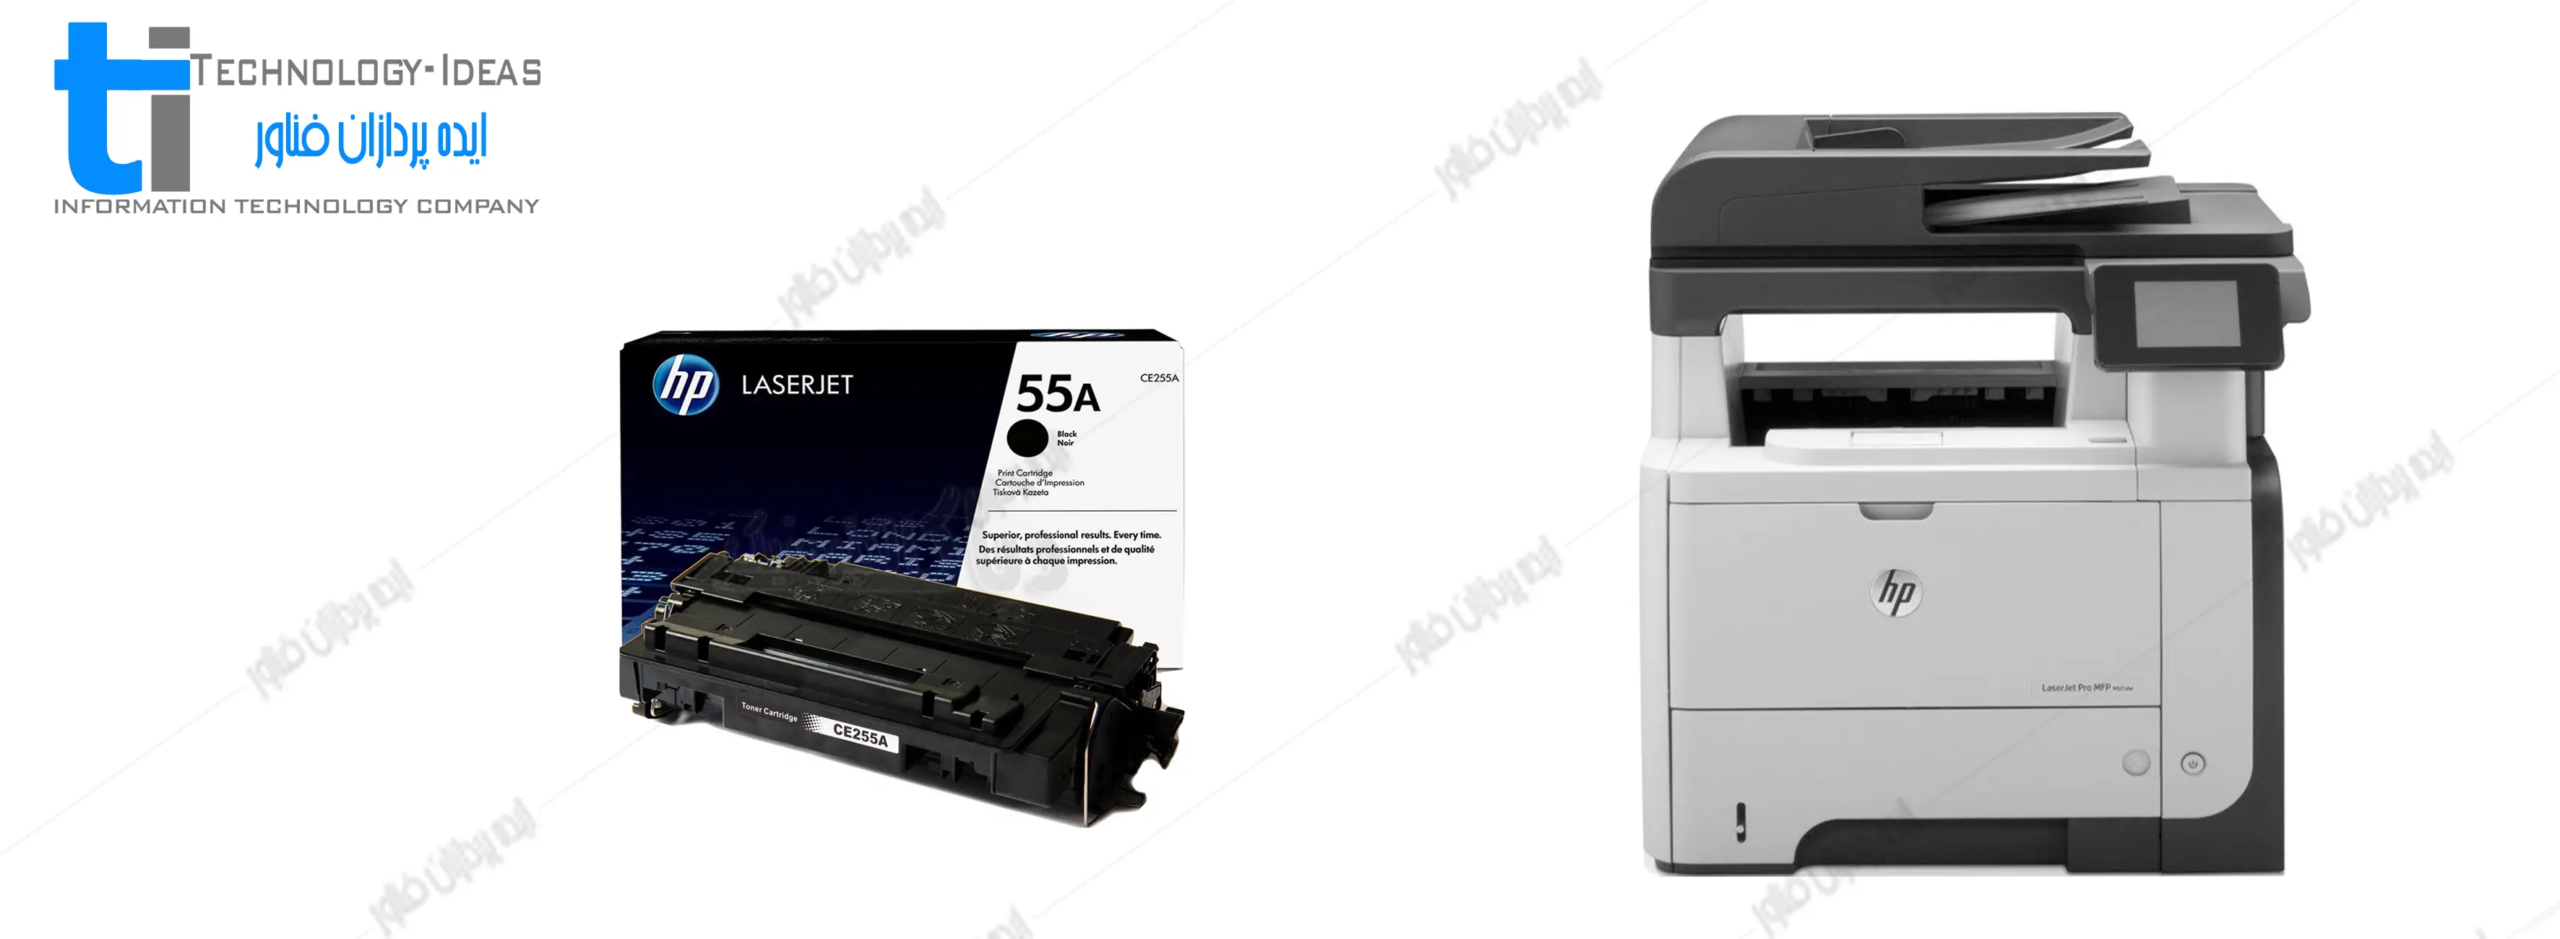 تعمیر پرینتر اچ پی HP LaserJet Pro M521dw